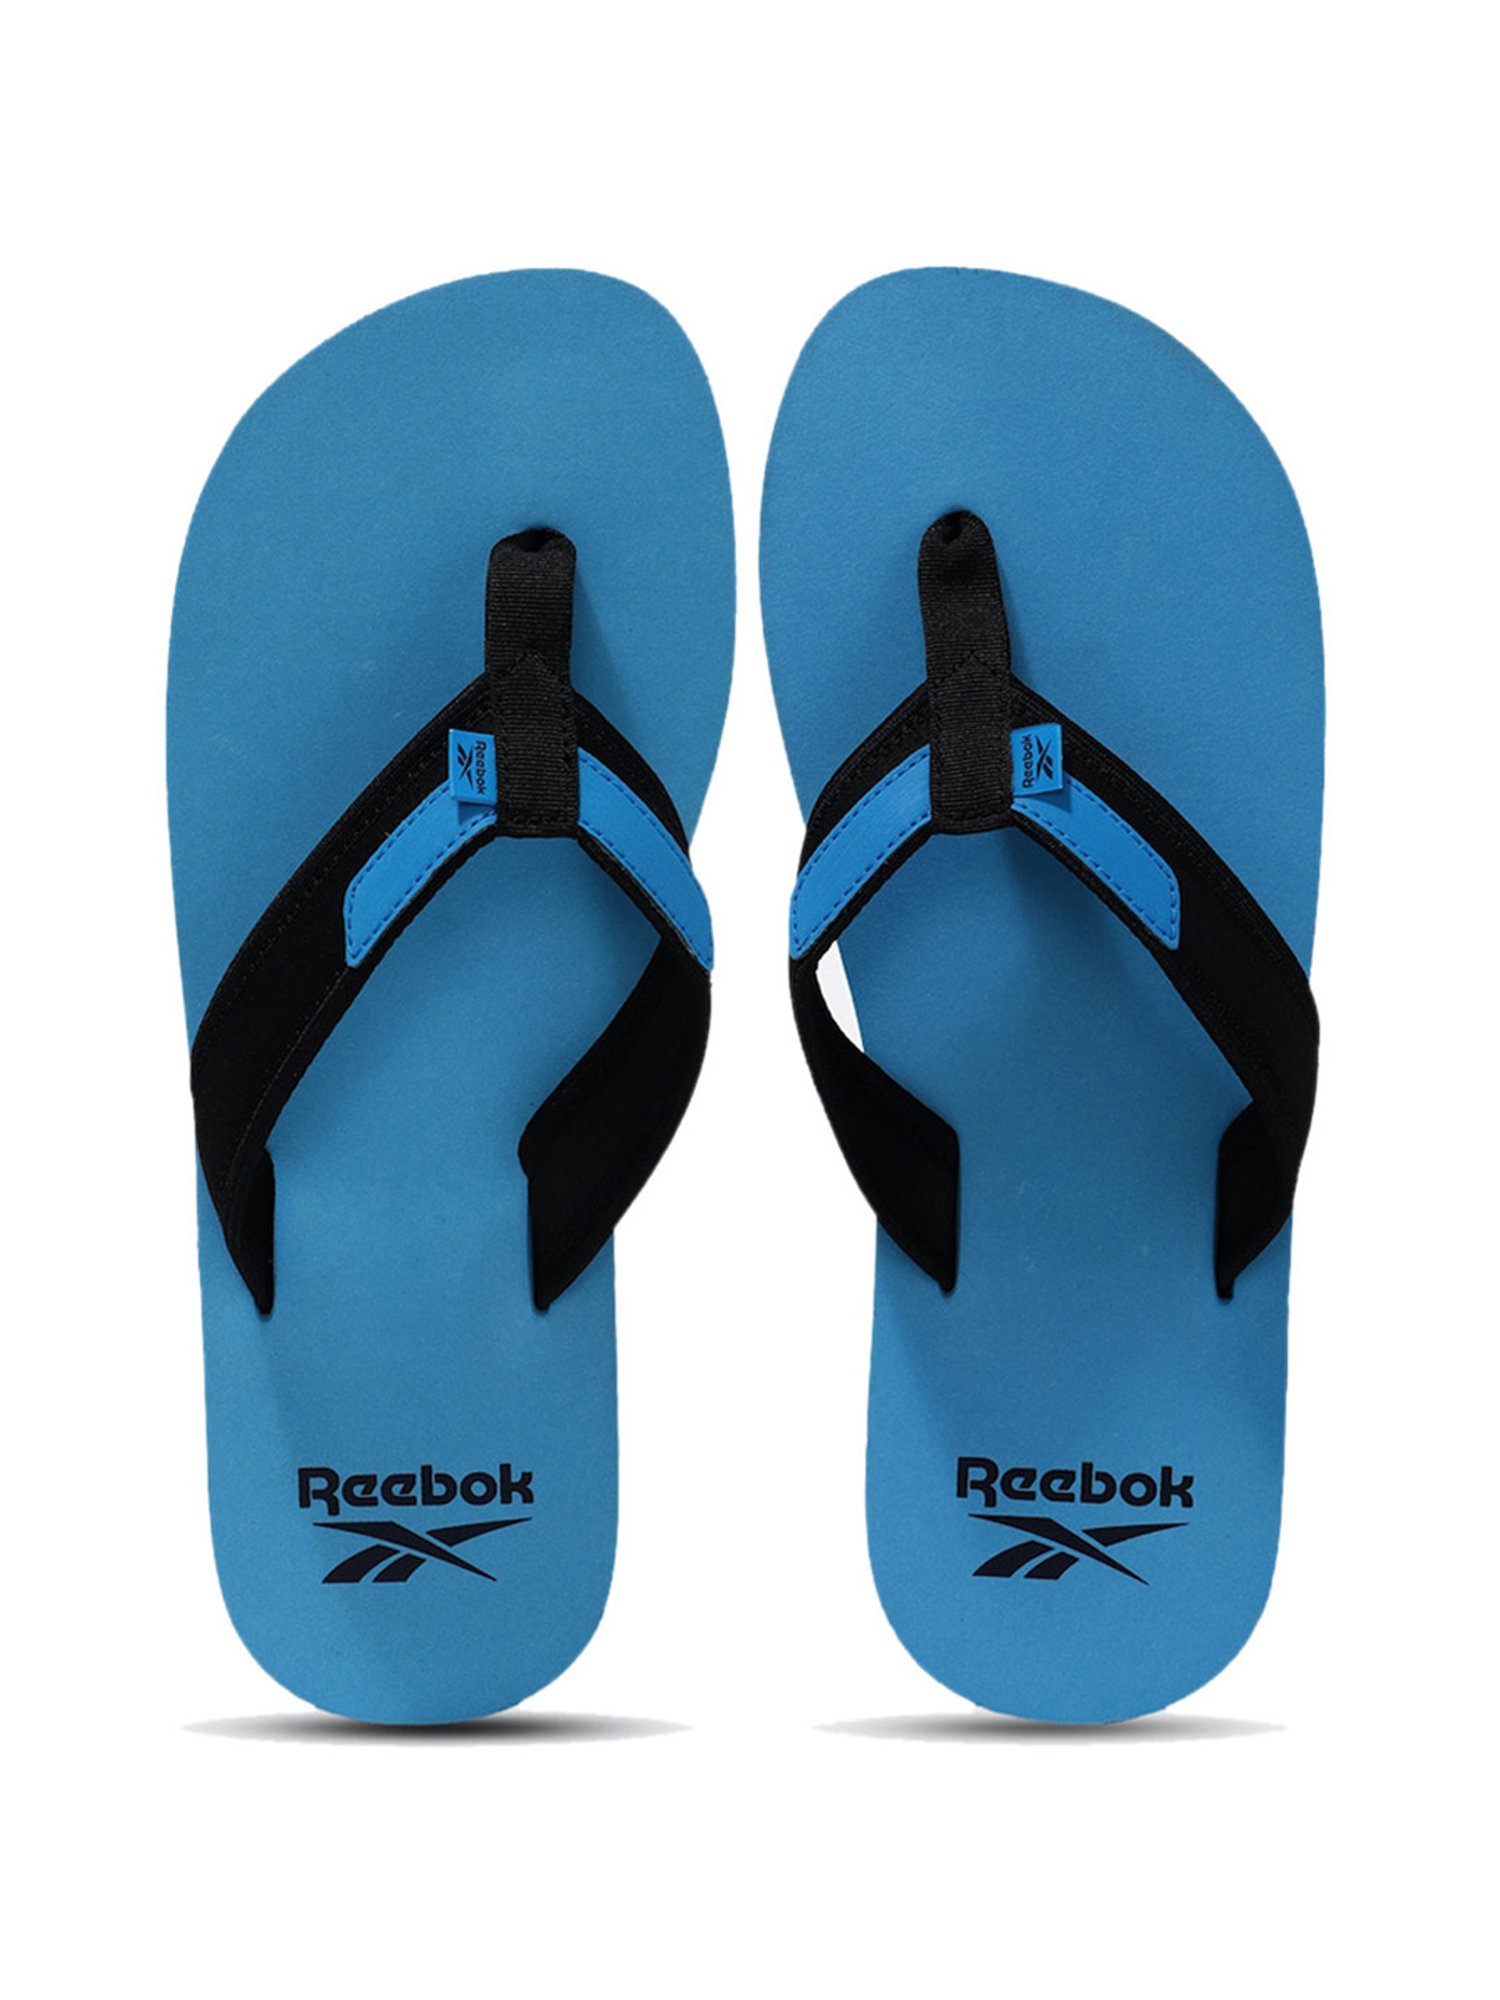 Buy Reebok Men's Drift Blue Flip Flops for Men at Best Price @ Tata CLiQ